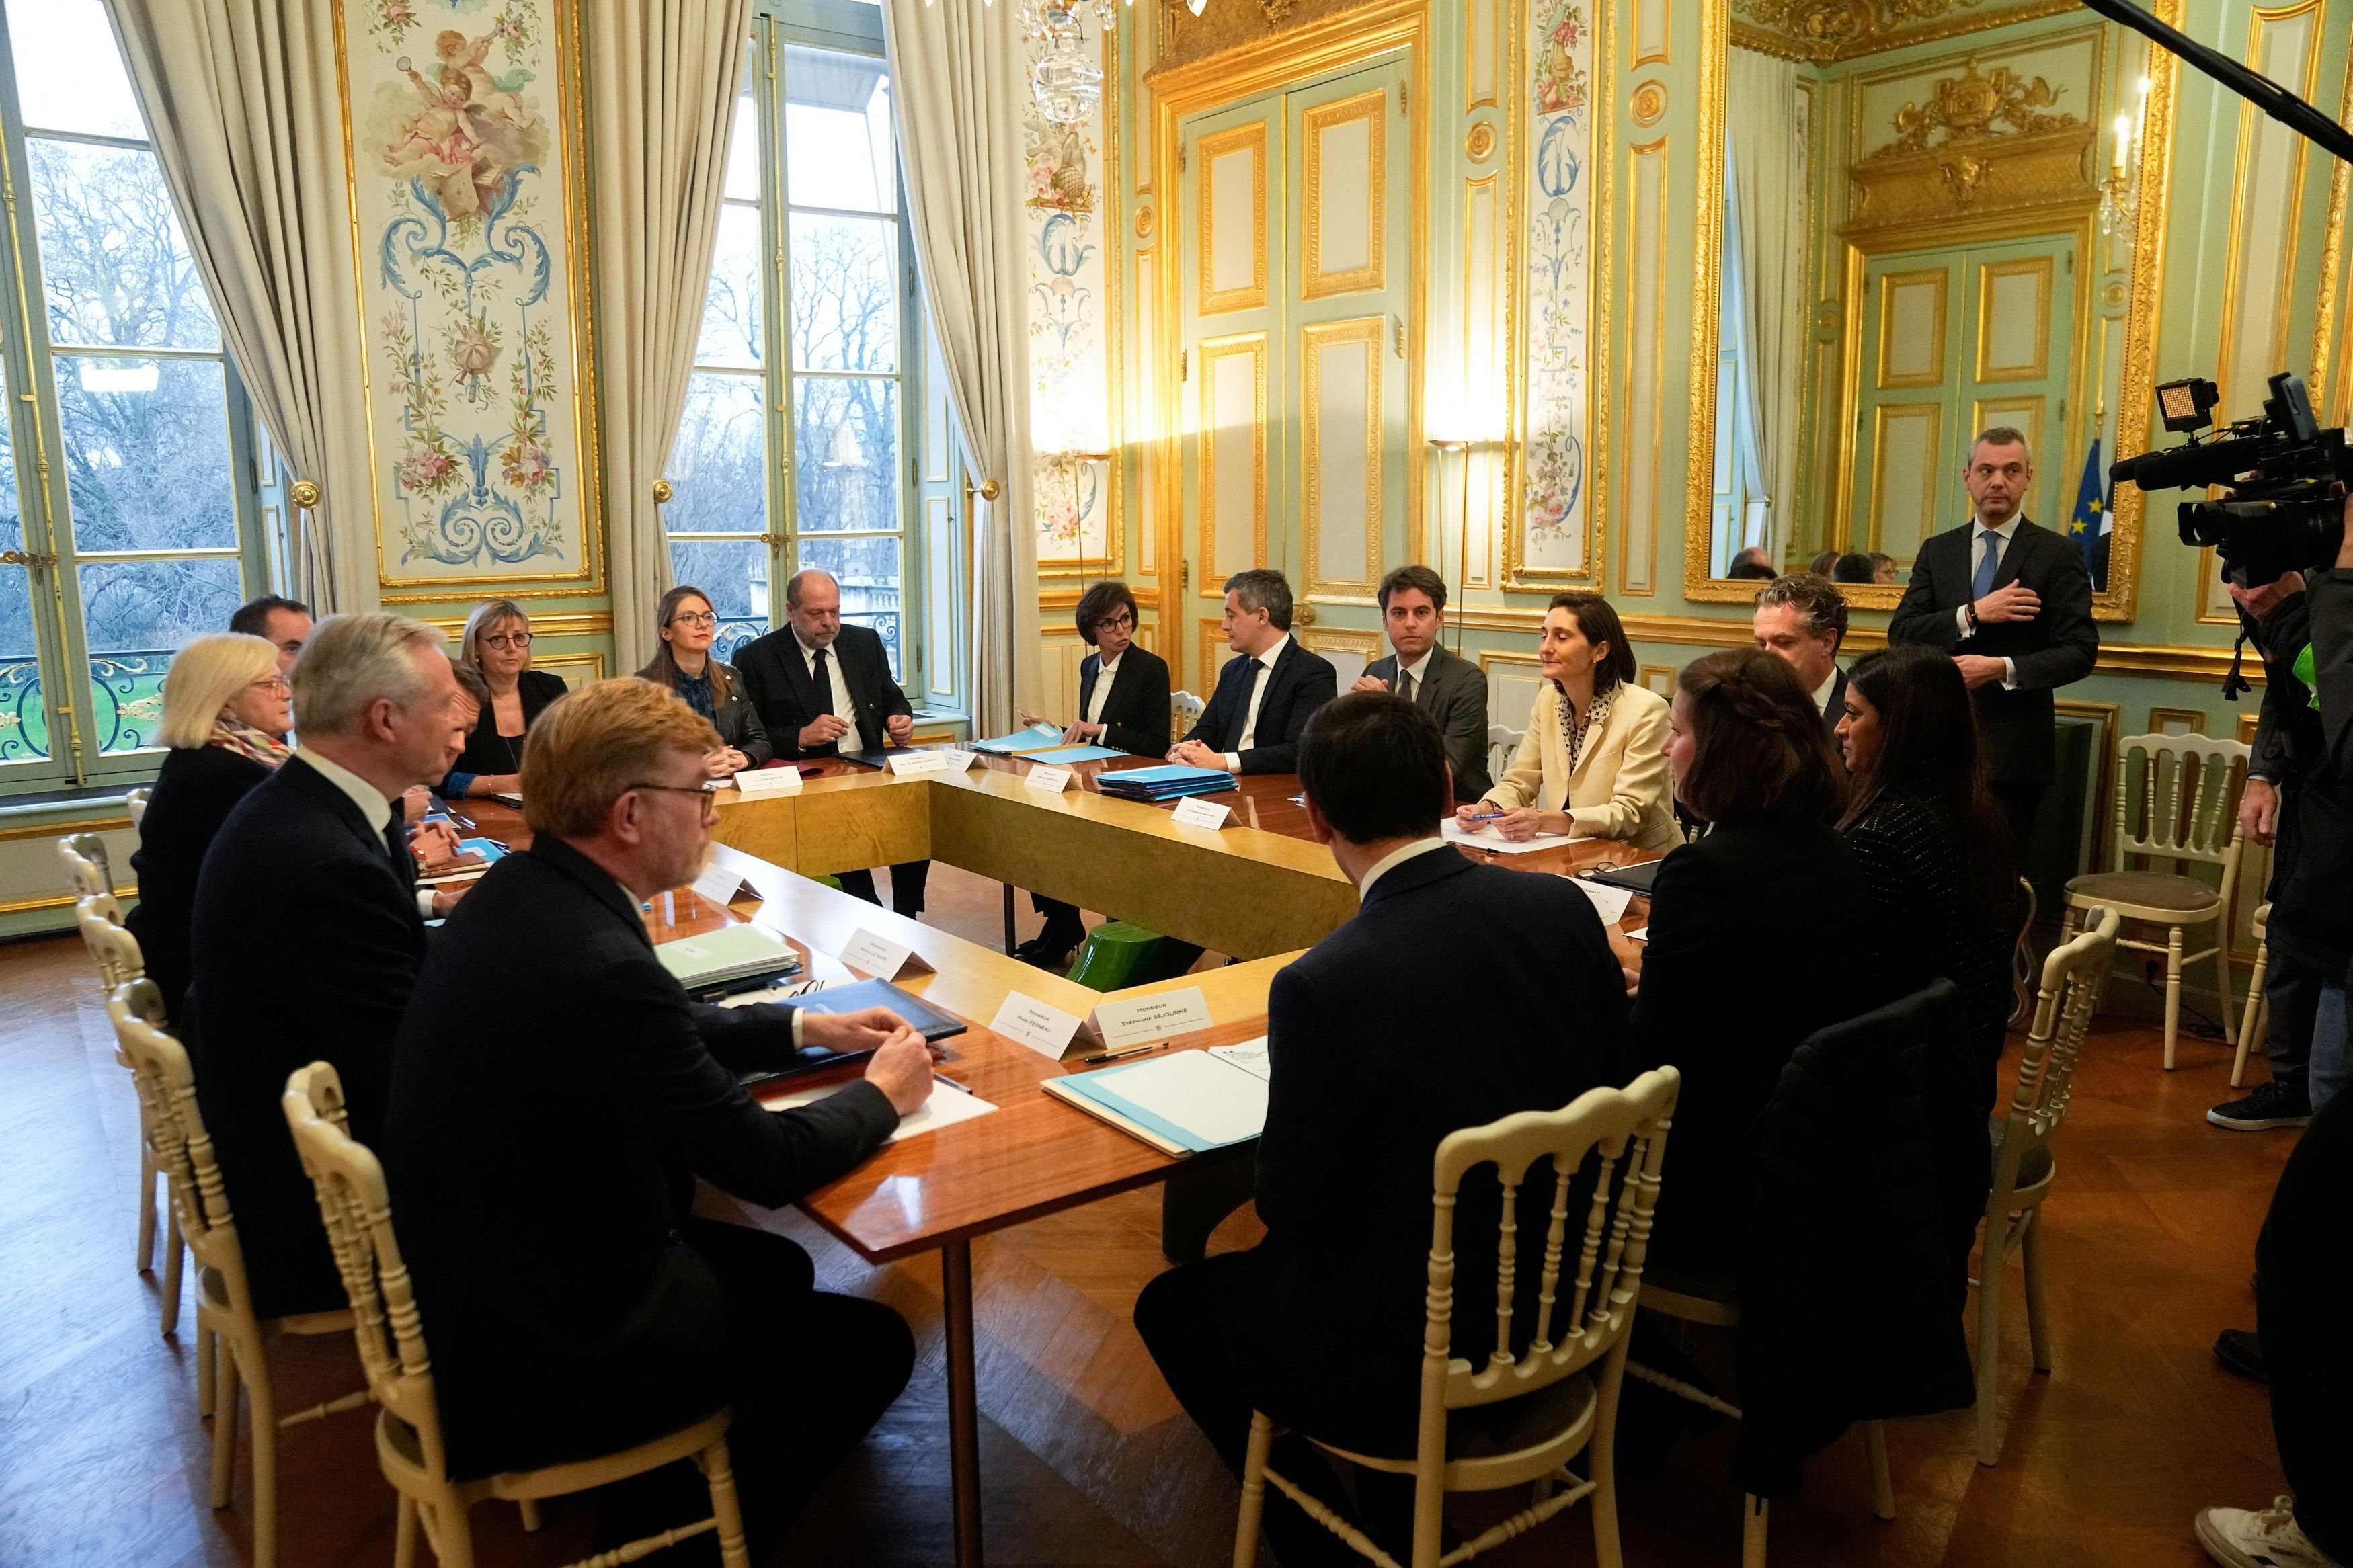 Liste des ministres français de l'Enseignement supérieur et de la Recherche  — Wikipédia